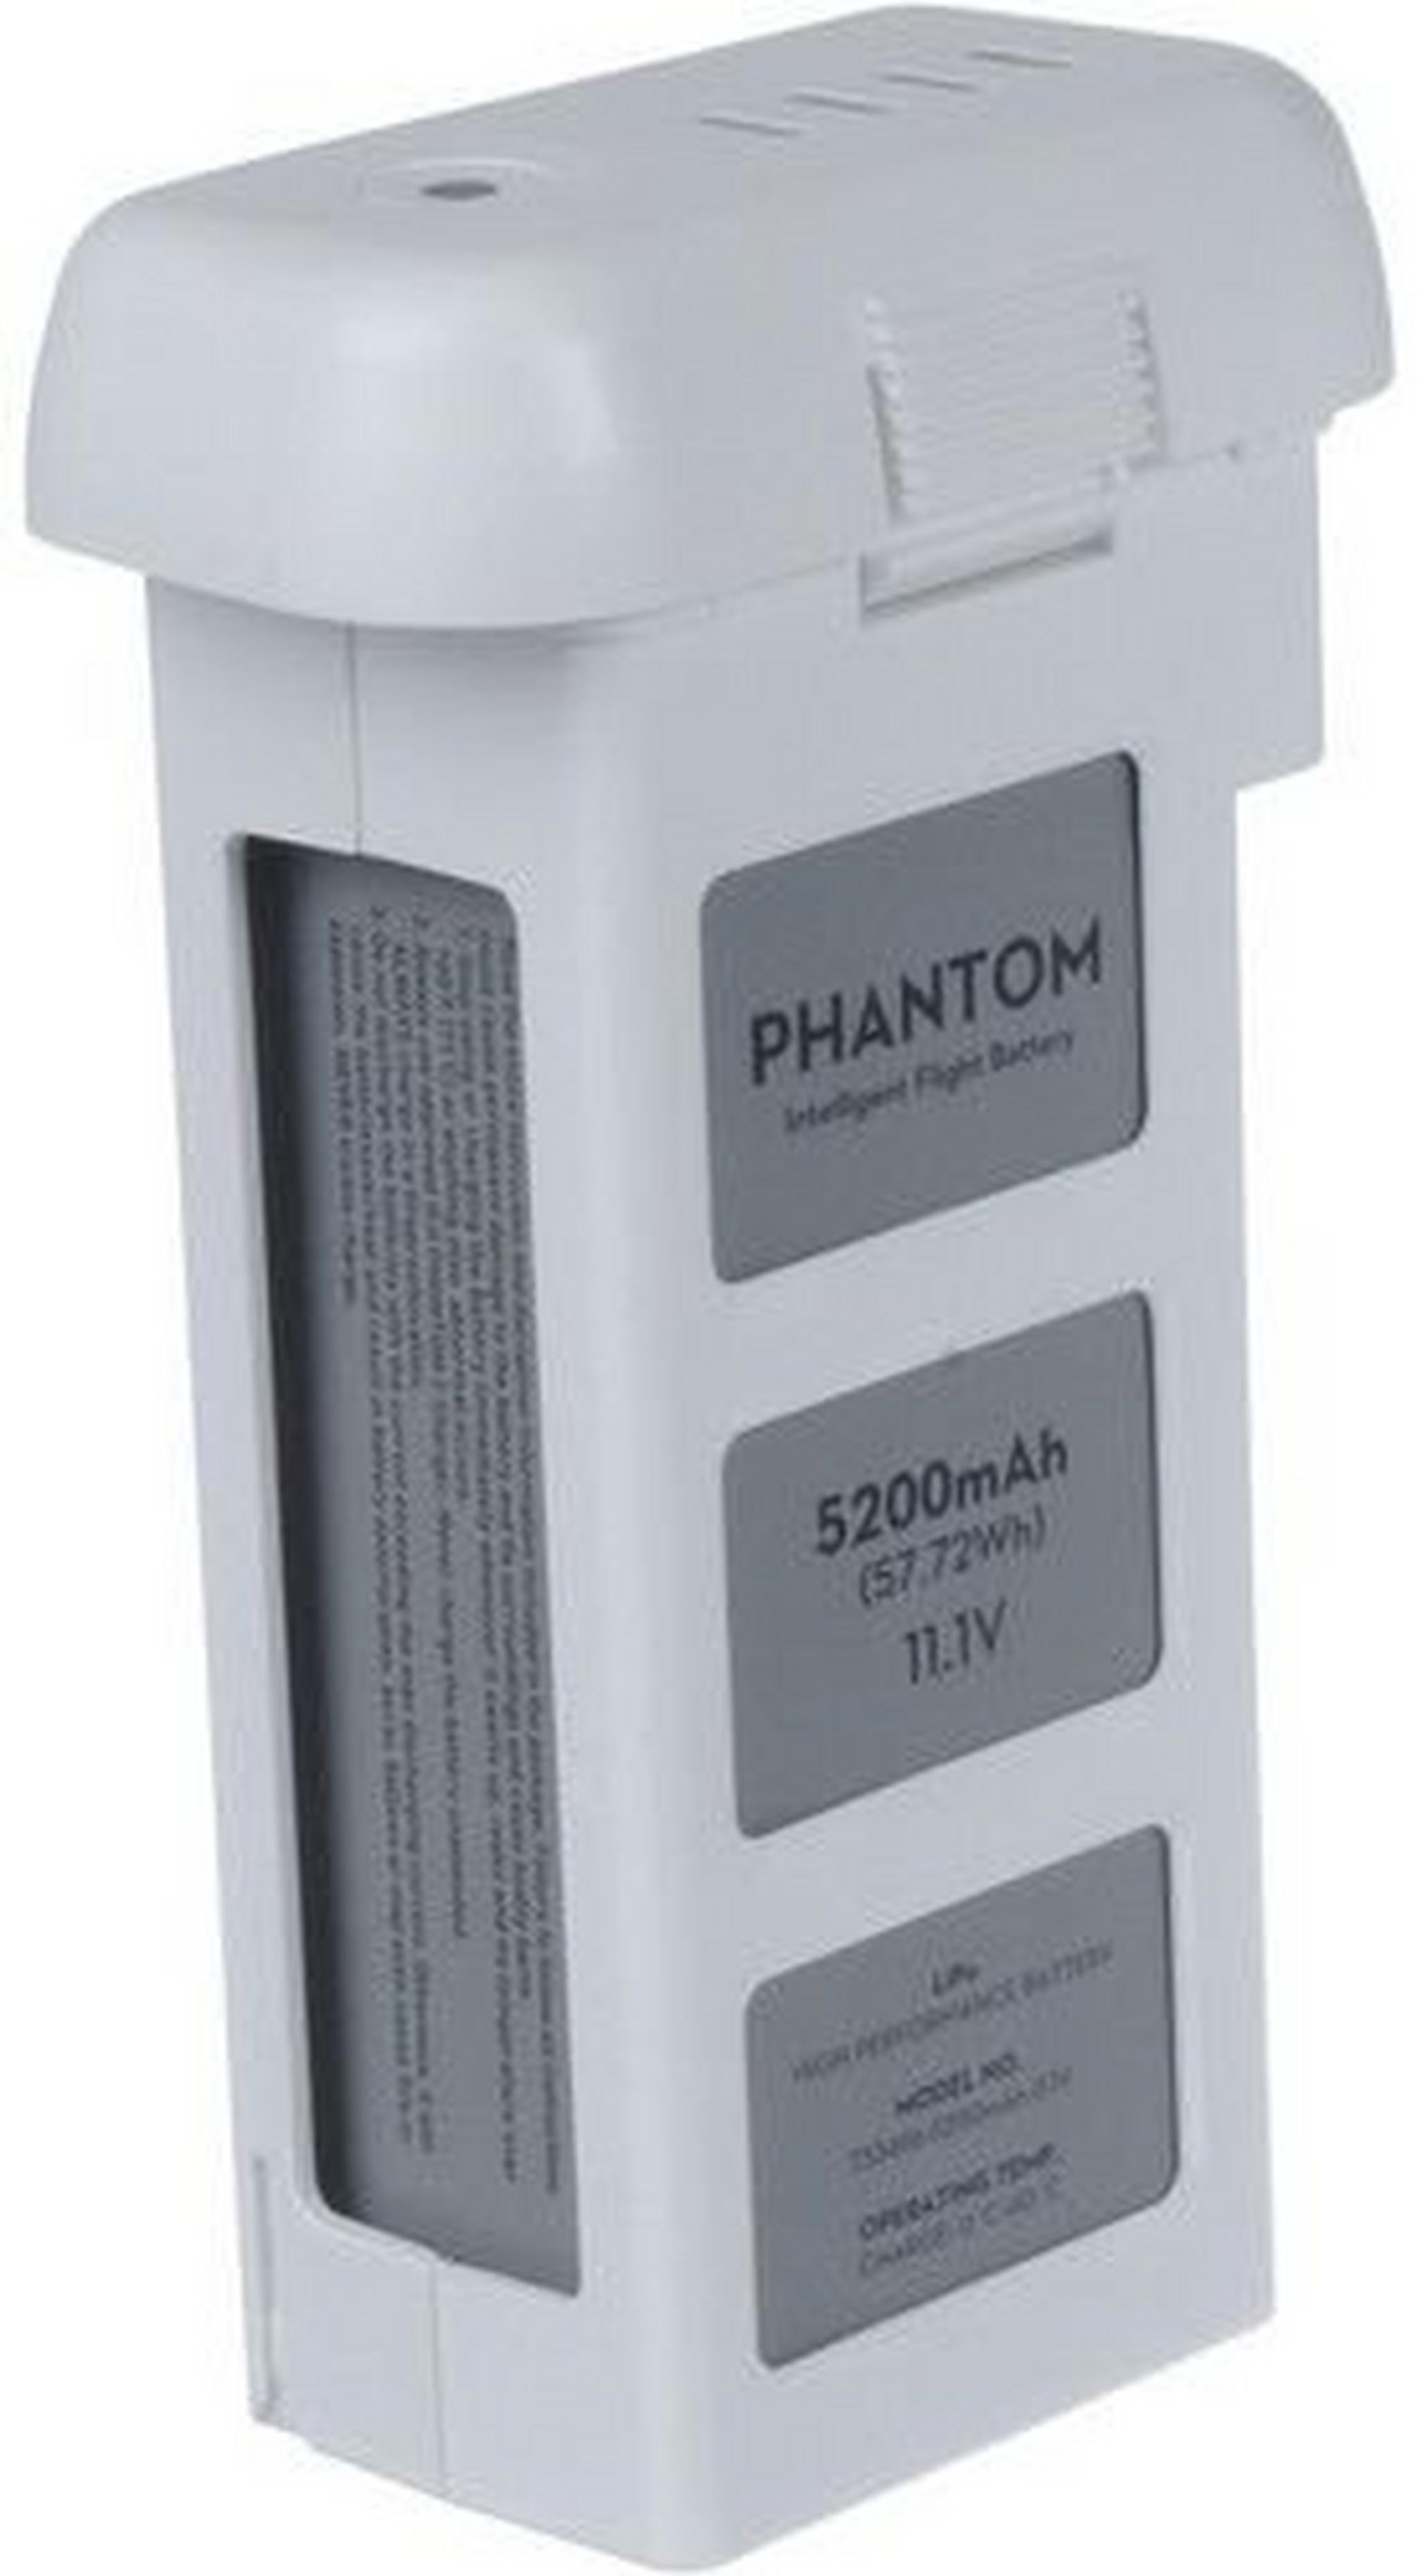 Phantom 2 Quad Battery